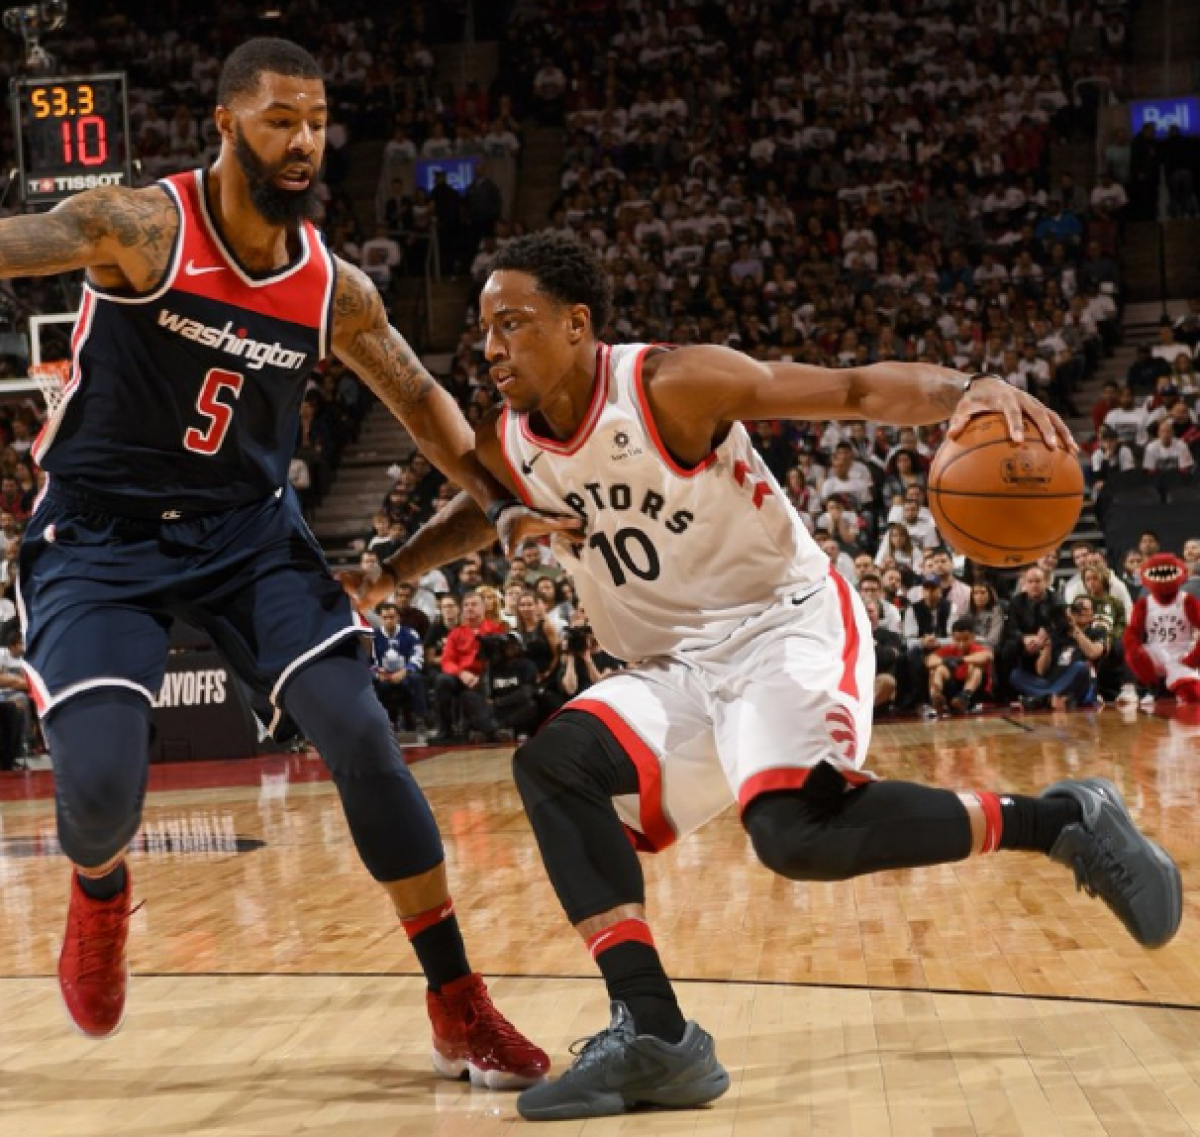 NBA Playoffs 2018 - Toronto batte Washington e la maledizione: 1-0 Raptors (114-106)